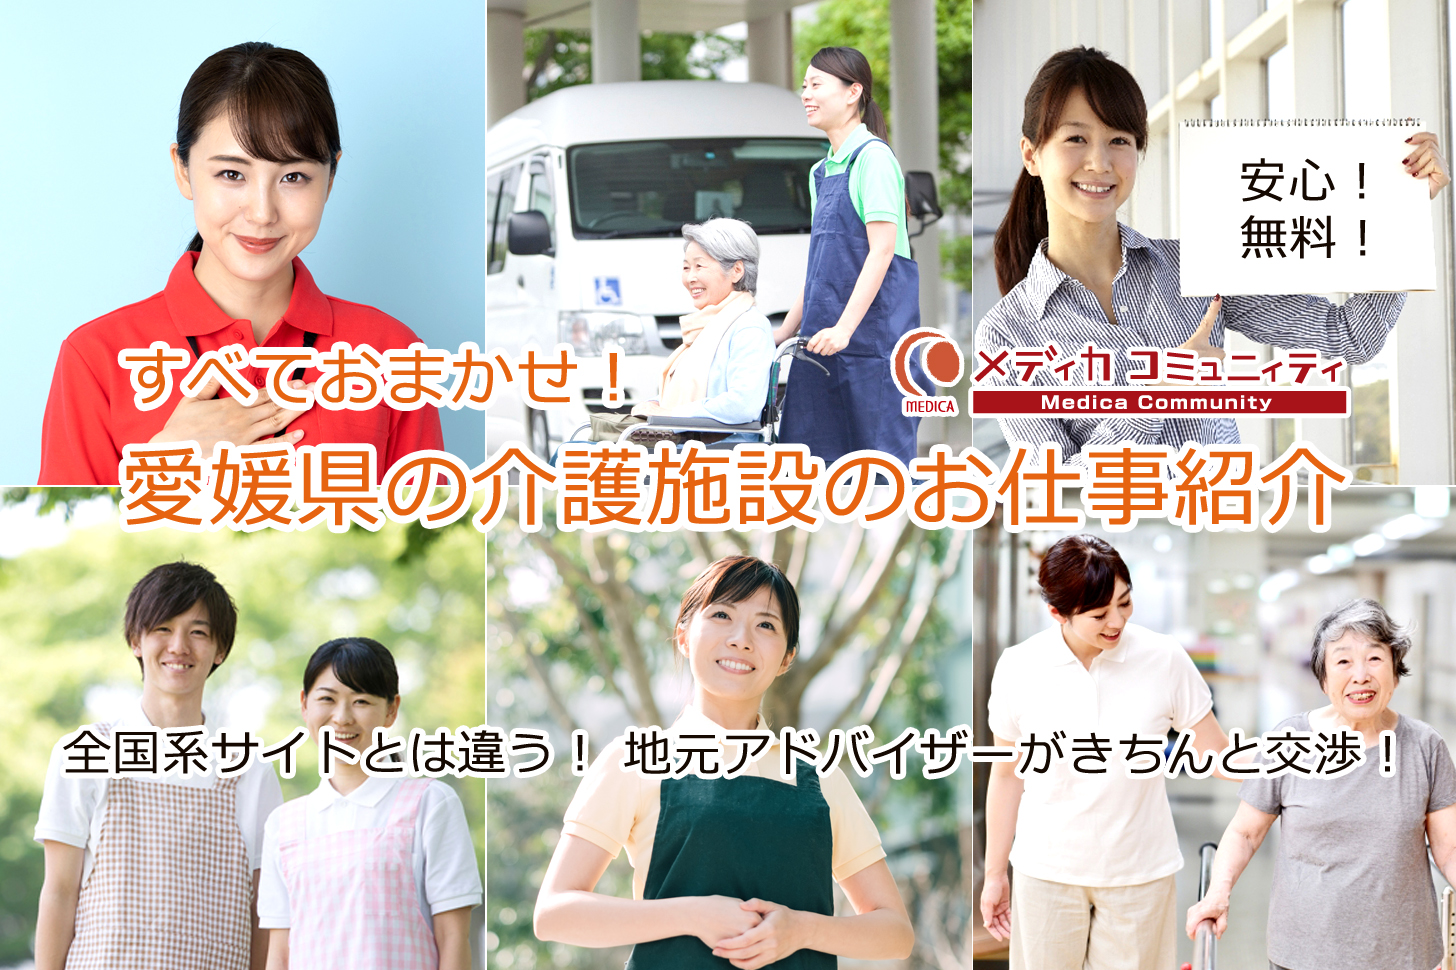 愛媛県松山市周辺の医療・介護の仕事を探すなら人材紹介バンク「メディカコミュニティ」